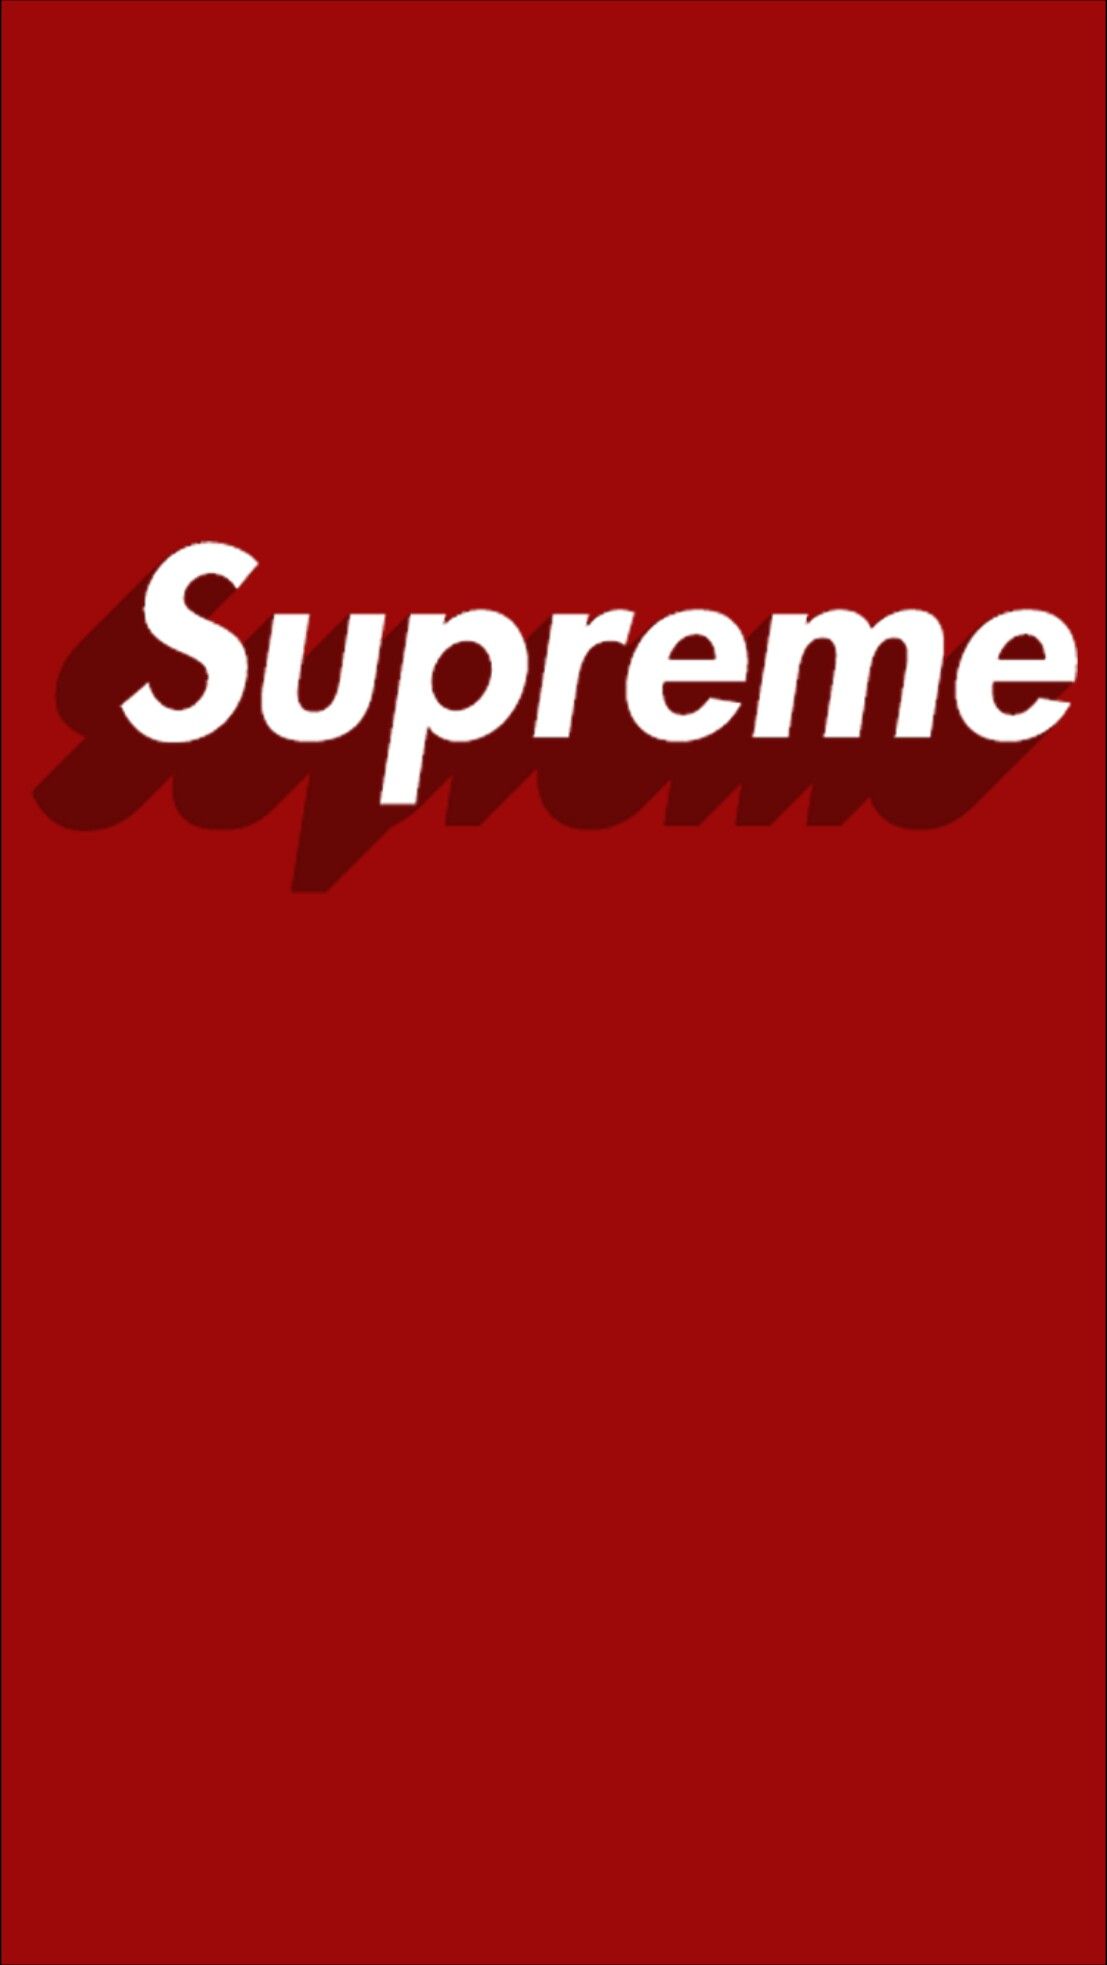 supreme logo wallpaper hd,text,font,red,logo,brand